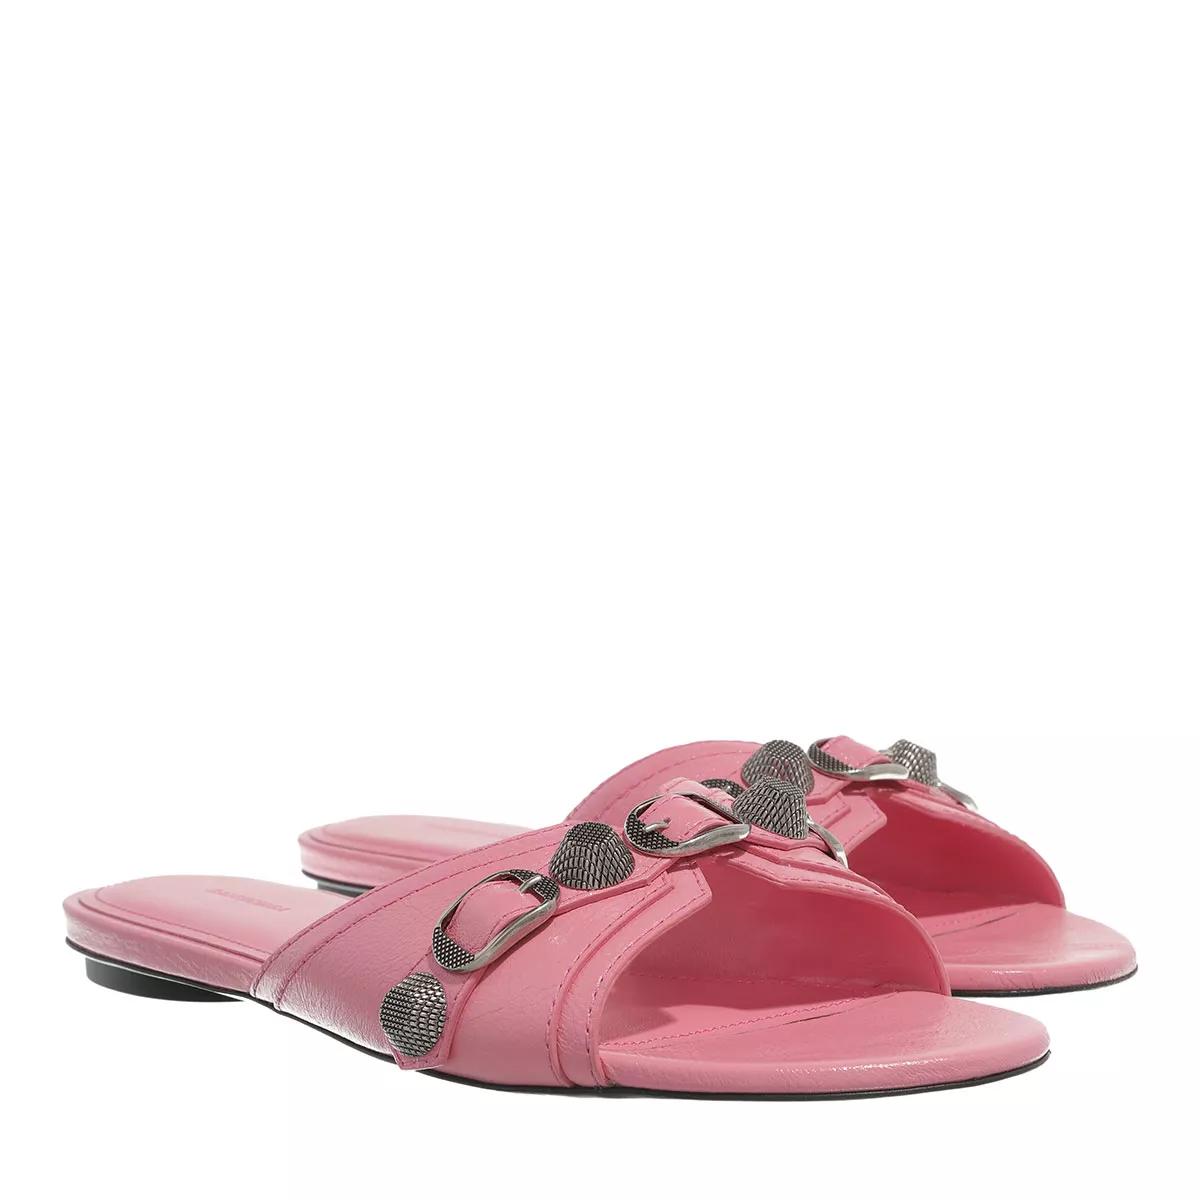 Balenciaga Sandalen - Cagole Sandals - Gr. 38 (EU) - in Rosa - für Damen von Balenciaga